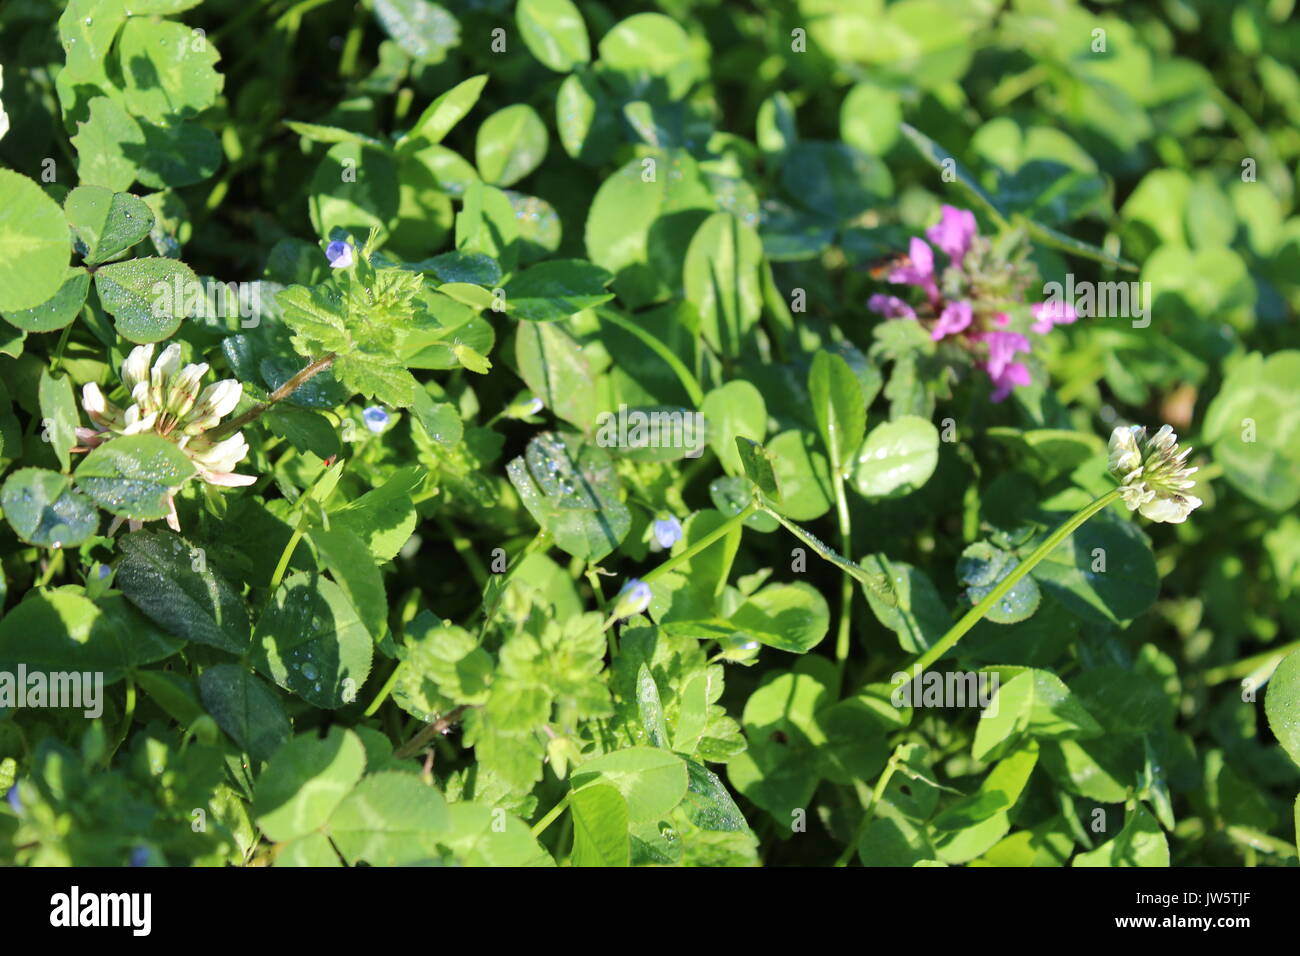 Groupe de fleurs sauvages en pleine croissance Le trèfle blanc, bleu et violet véronique ortie morte Banque D'Images